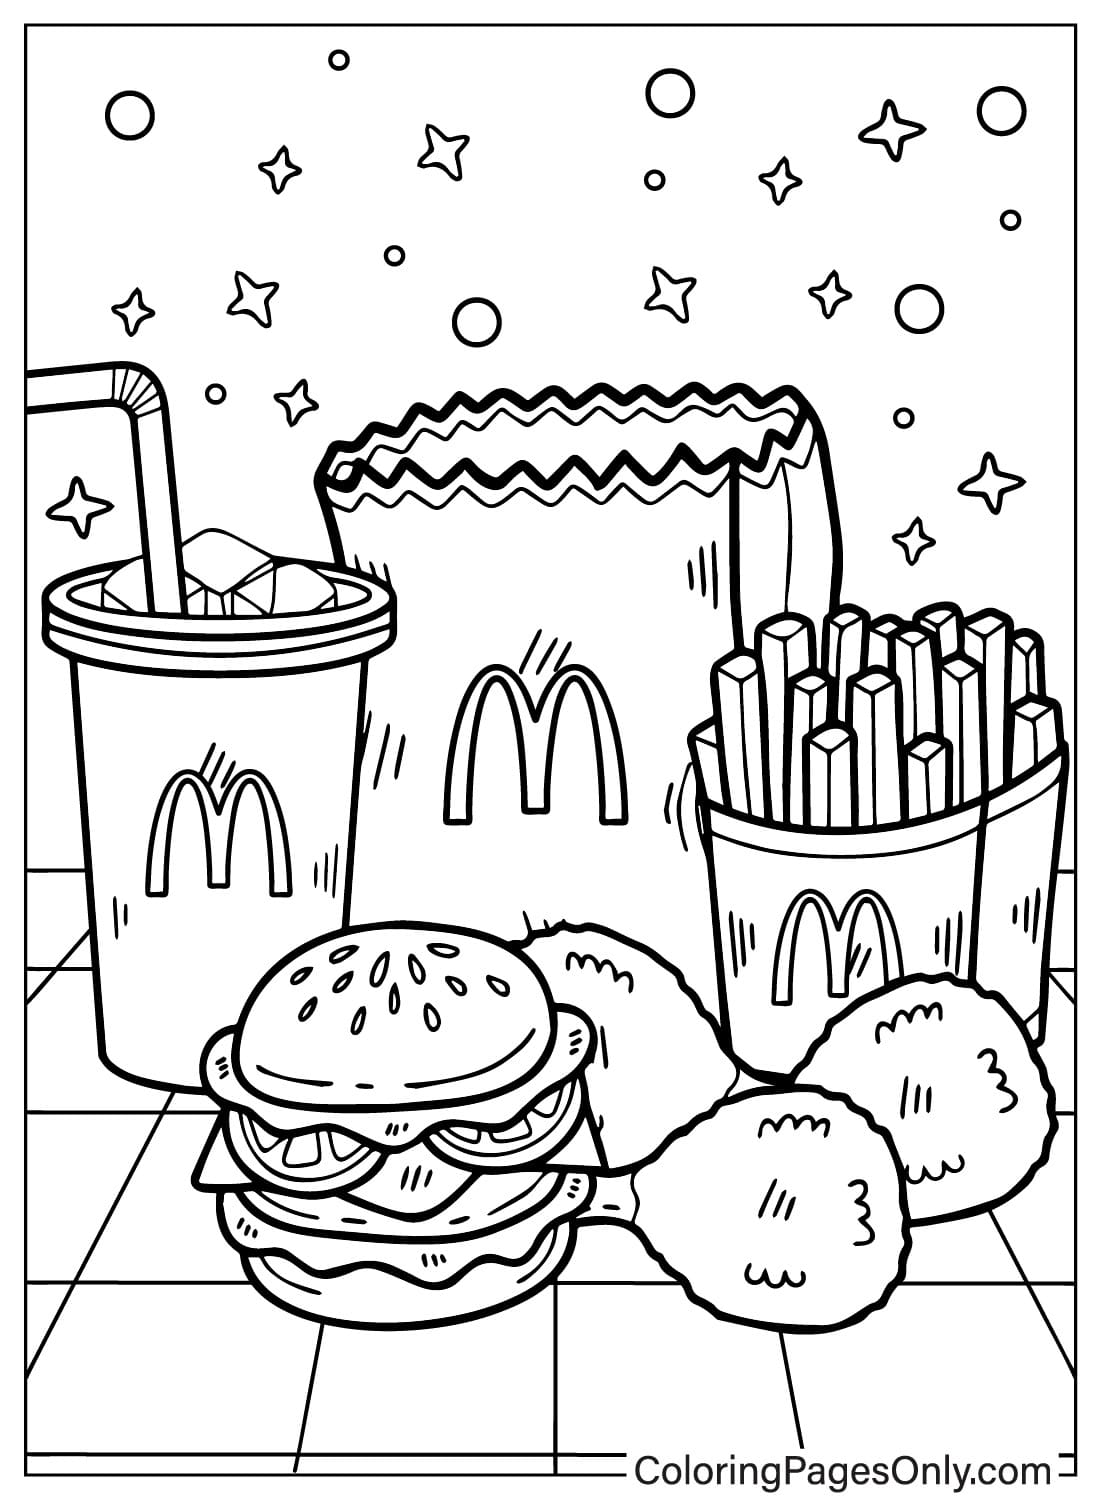 Página para colorir do McDonalds para impressão no McDonald's